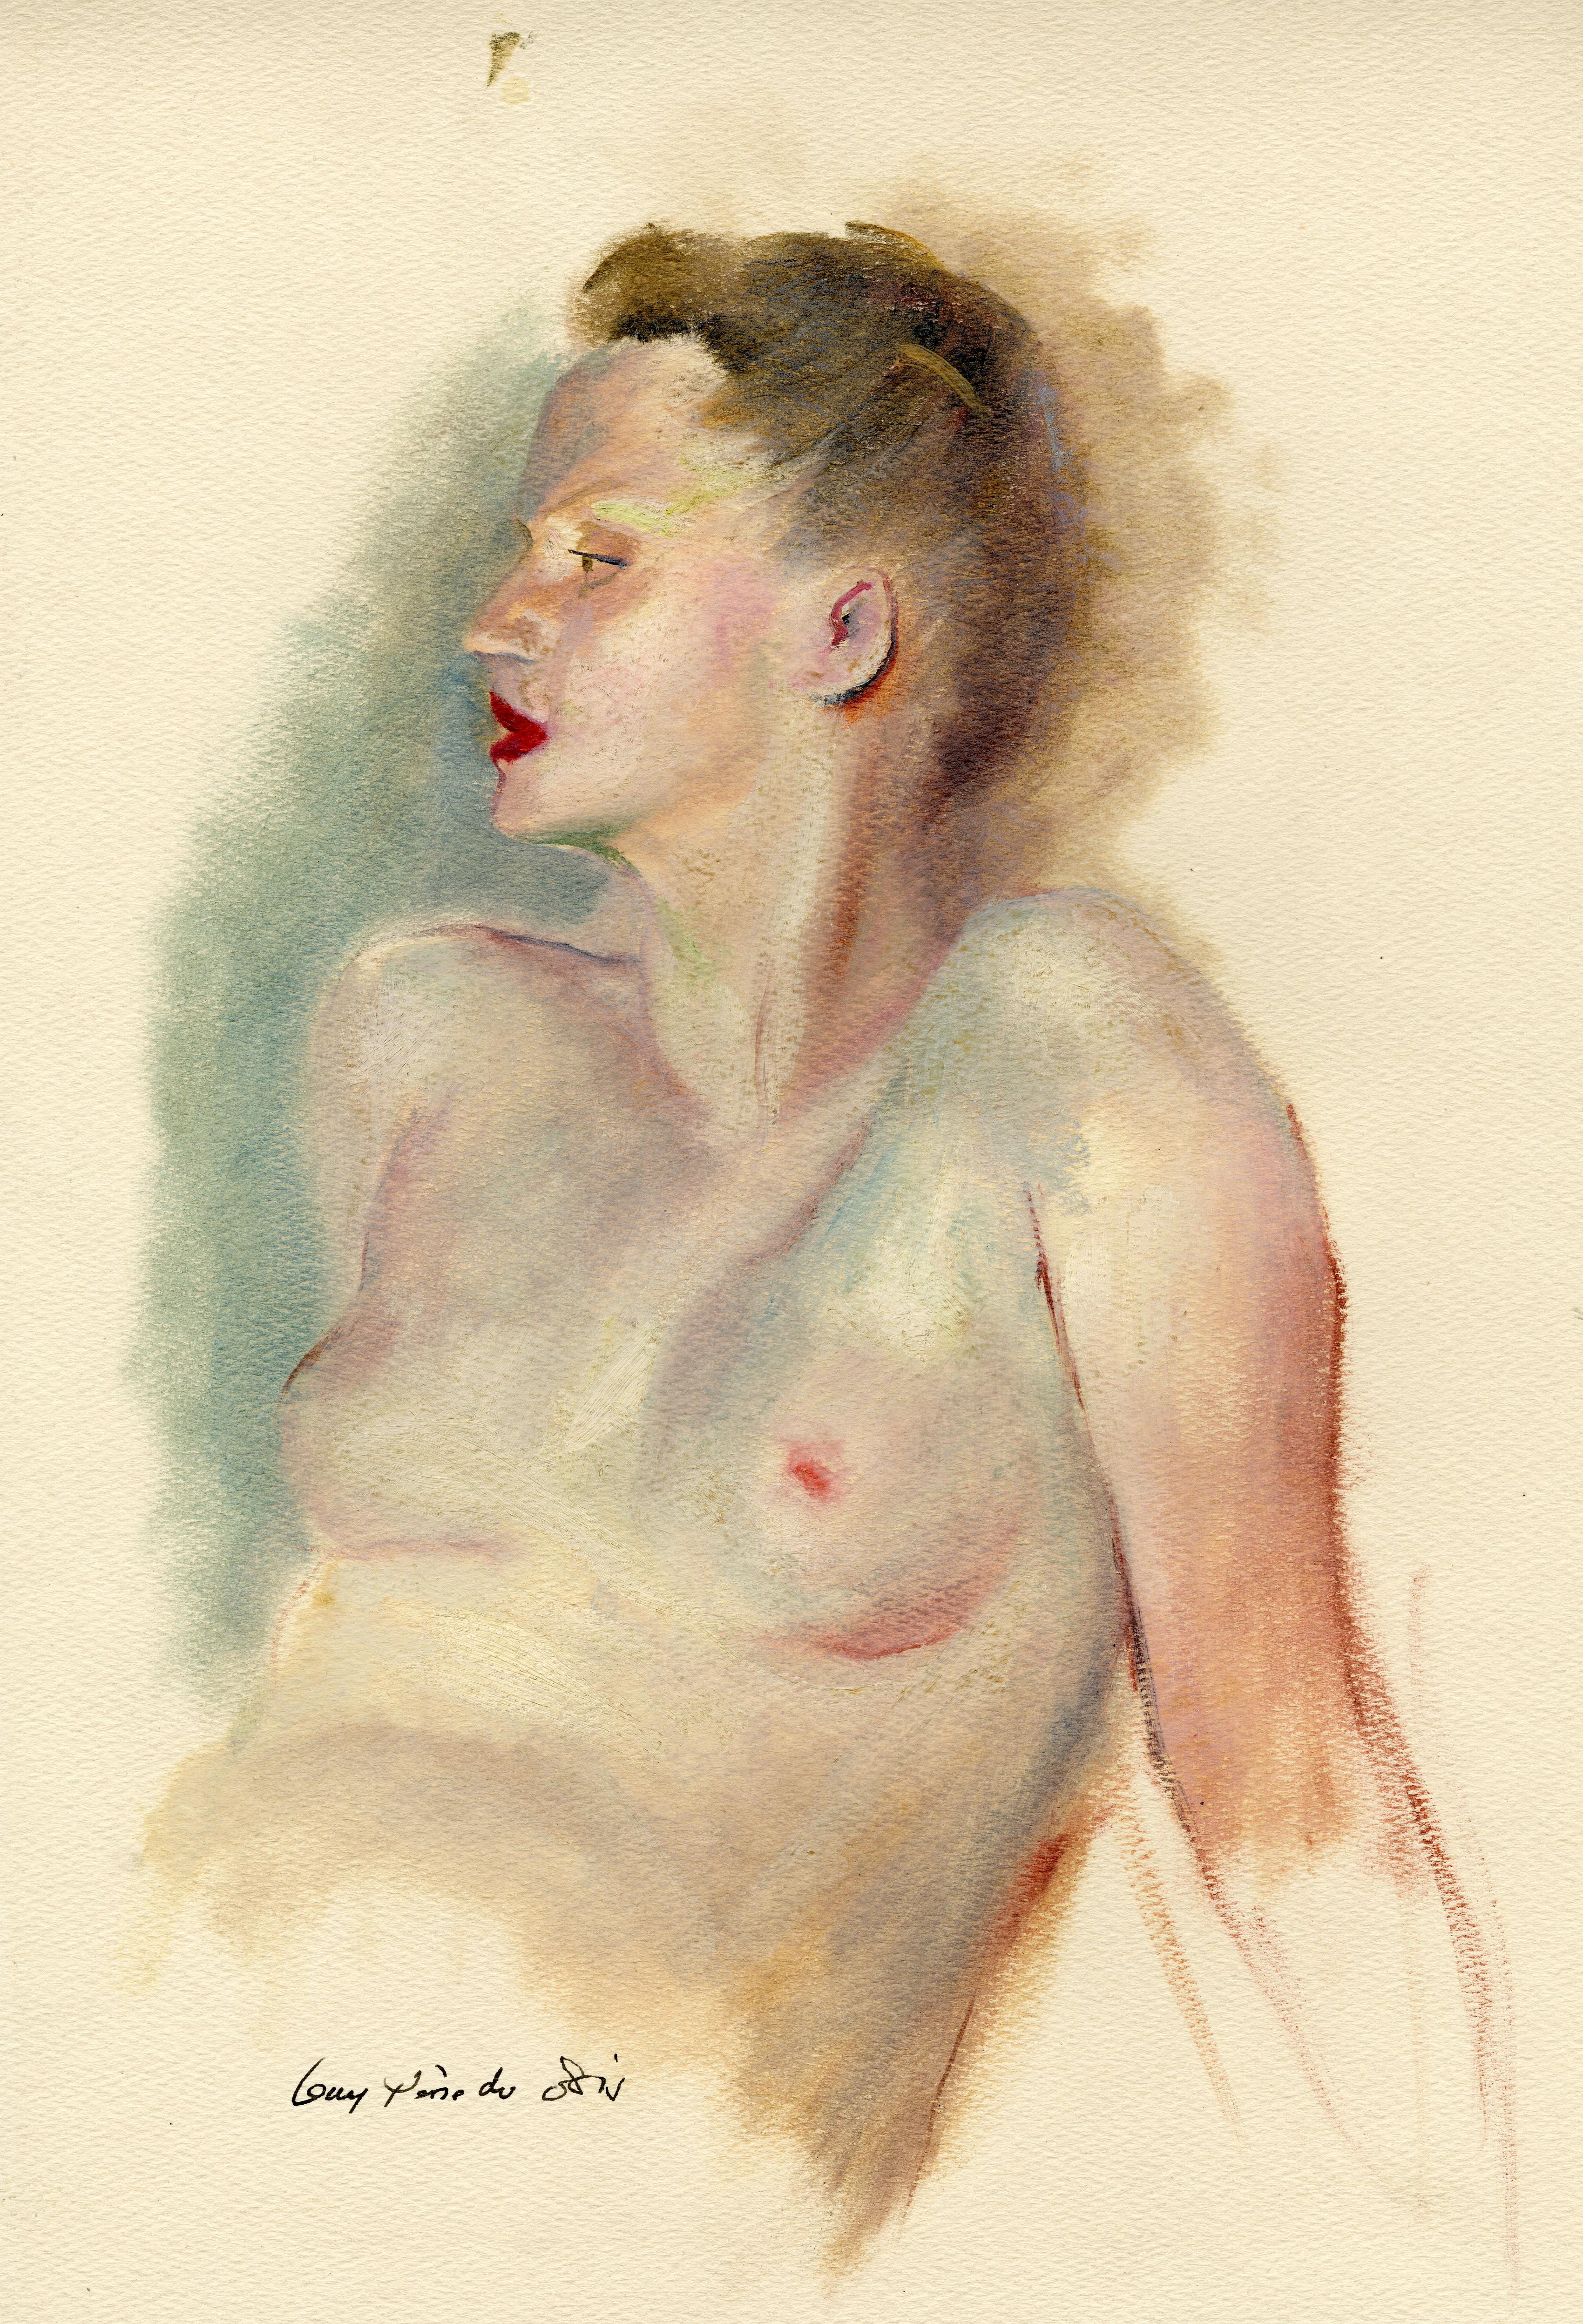 Guy Pène Du Bois Nude Painting - Portia Novella Le Brun or “Stephanie”